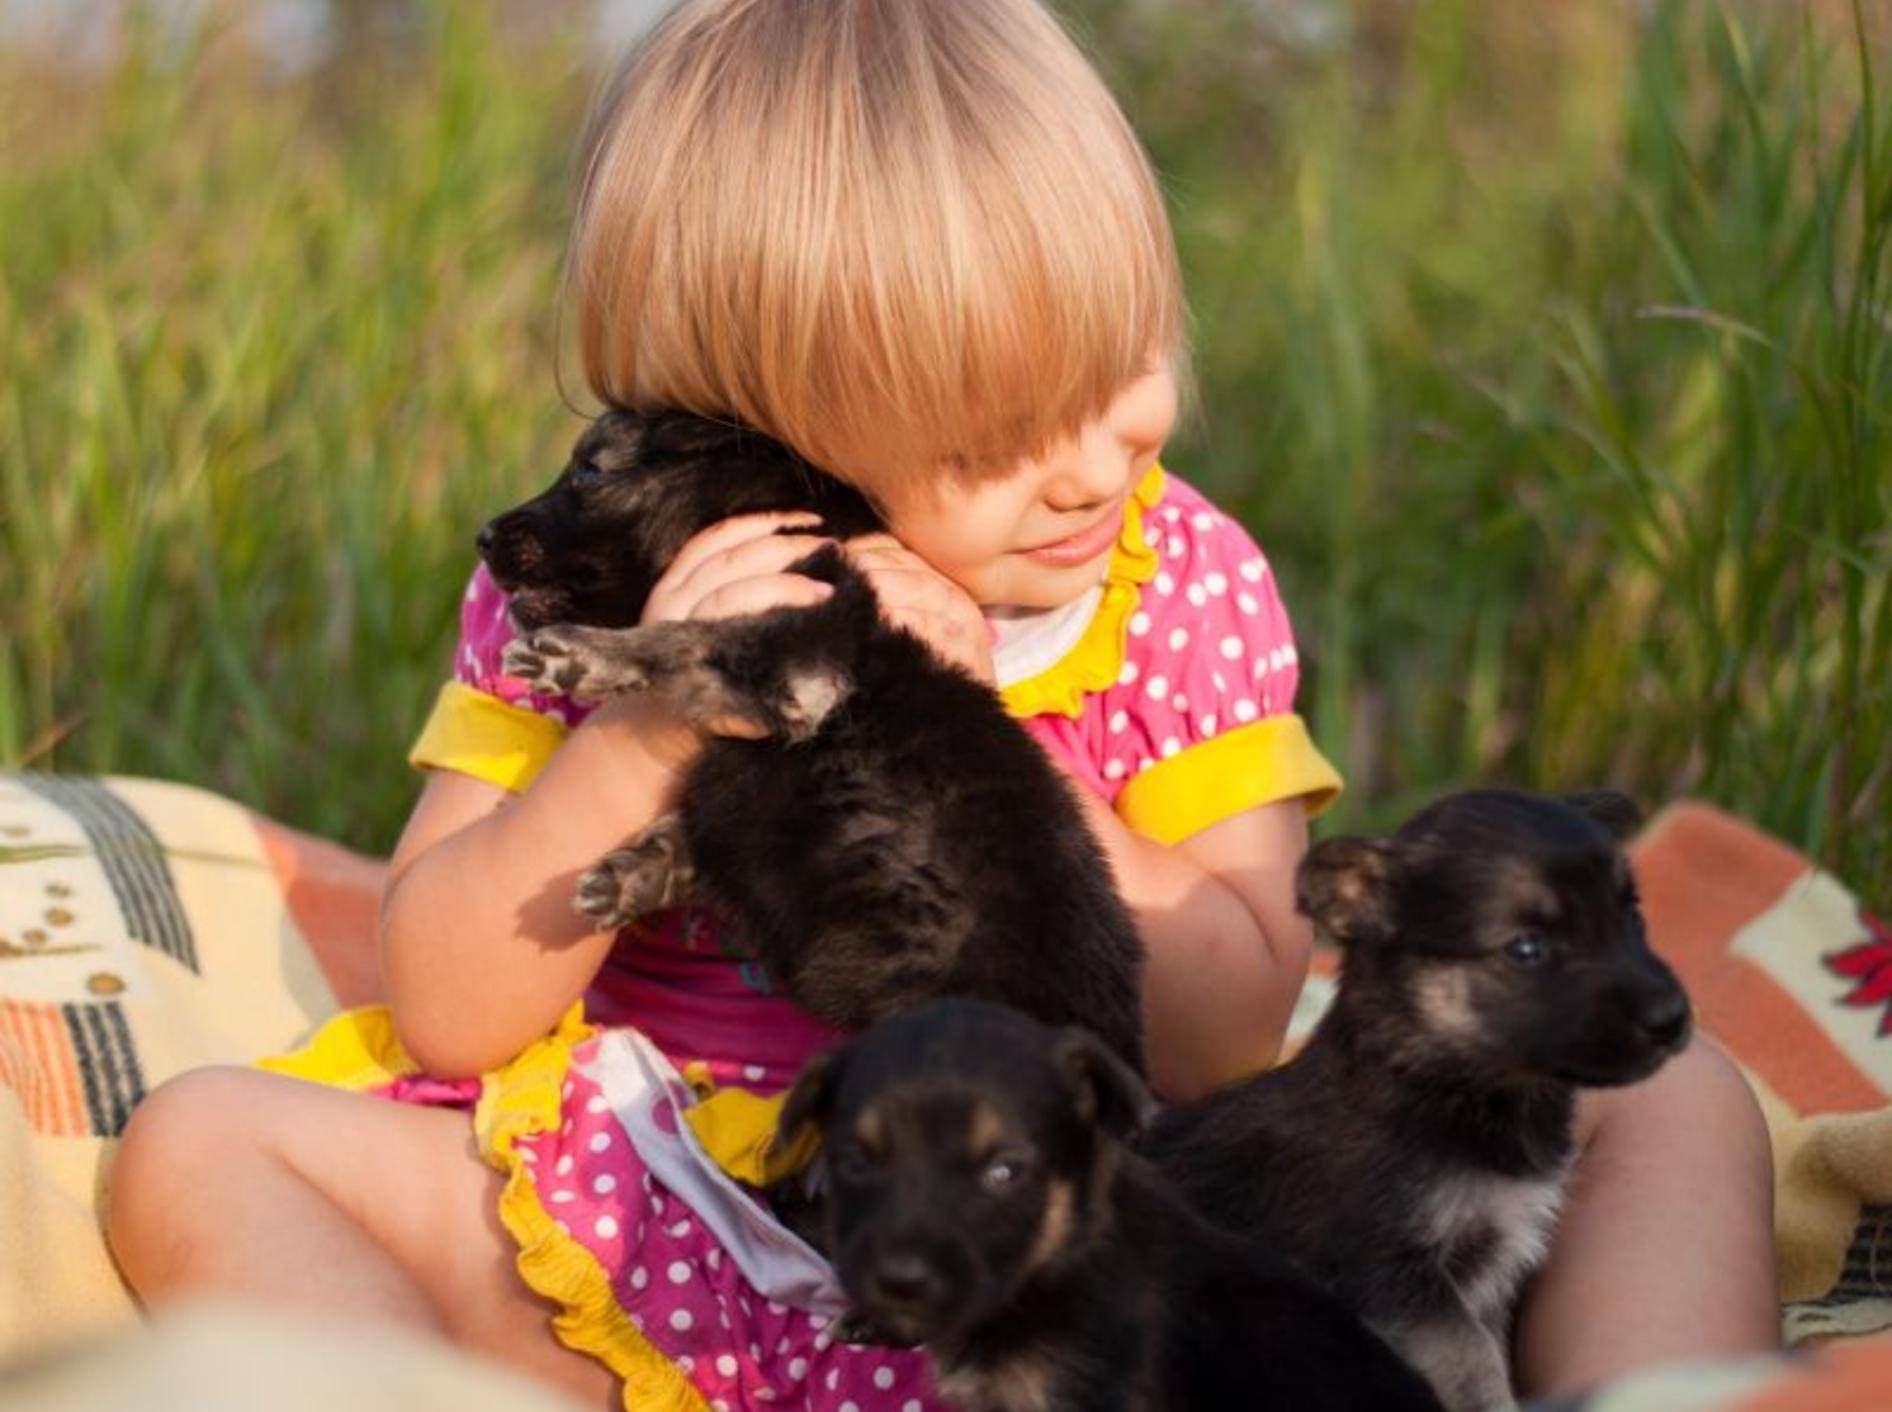 Süße Welpen und ein kleines Mädchen: Beginn einer wunderbaren Freundschaft — Bild: Shutterstock / BestPhotoPlus